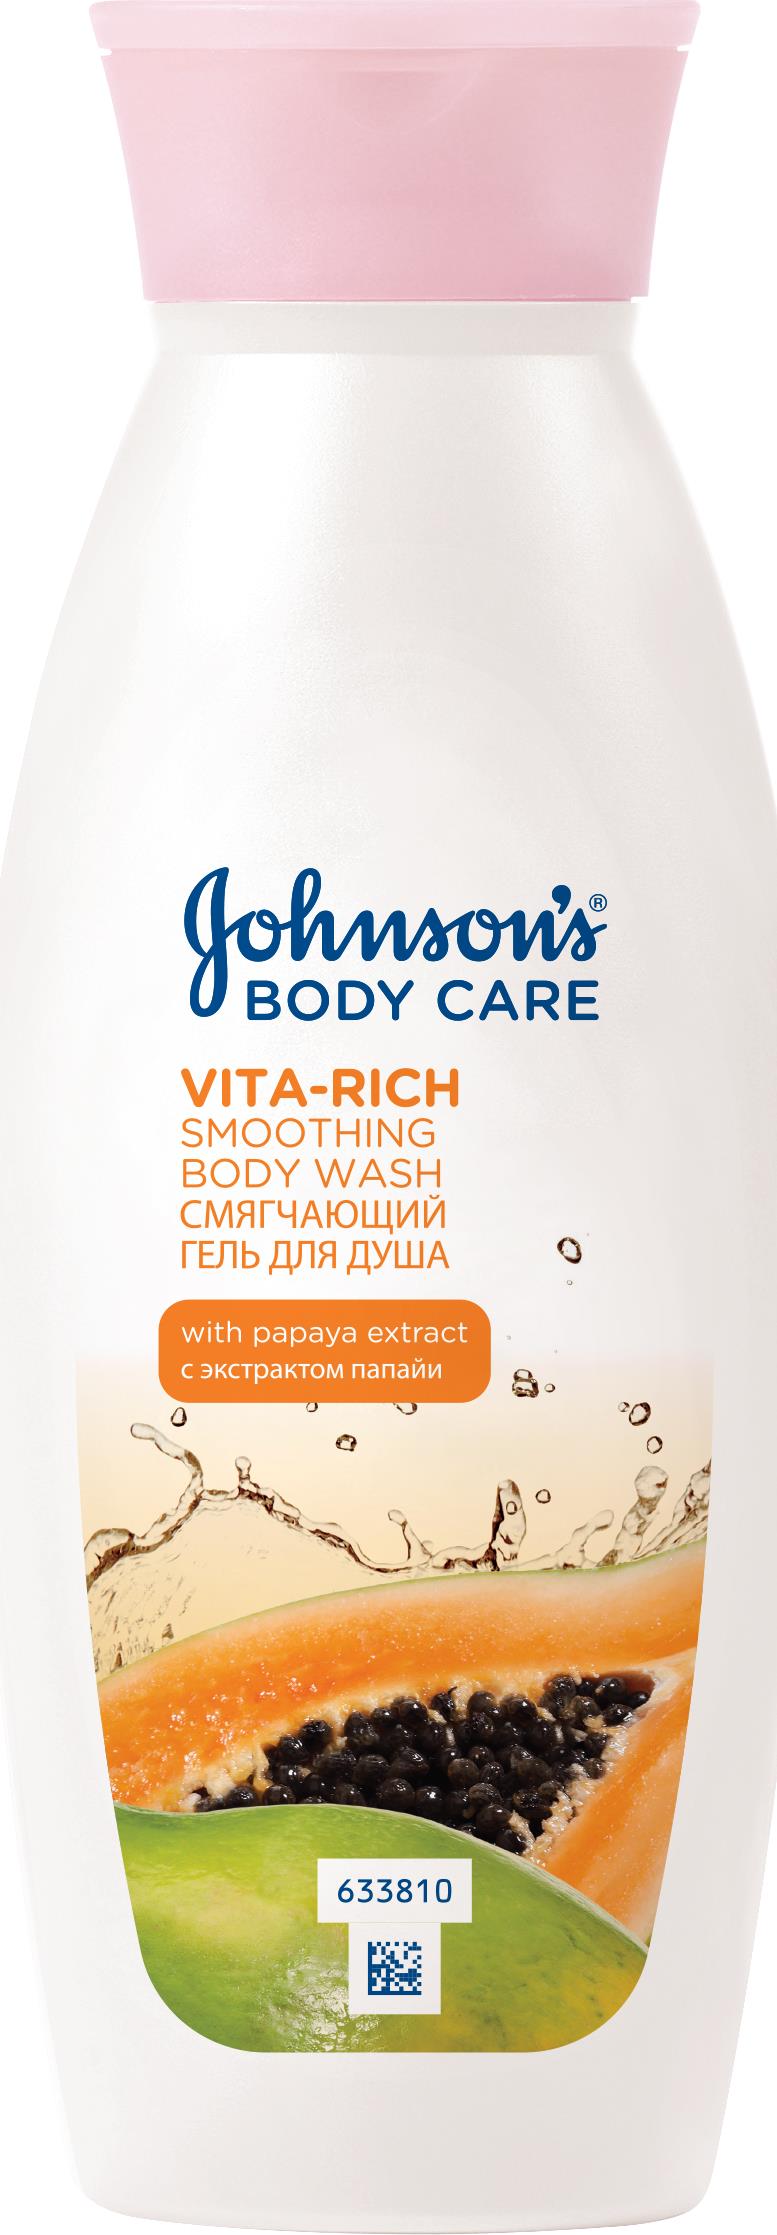 Лосьон Johnson's Vita-Rich с экстрактом папайи смягчающий для душа